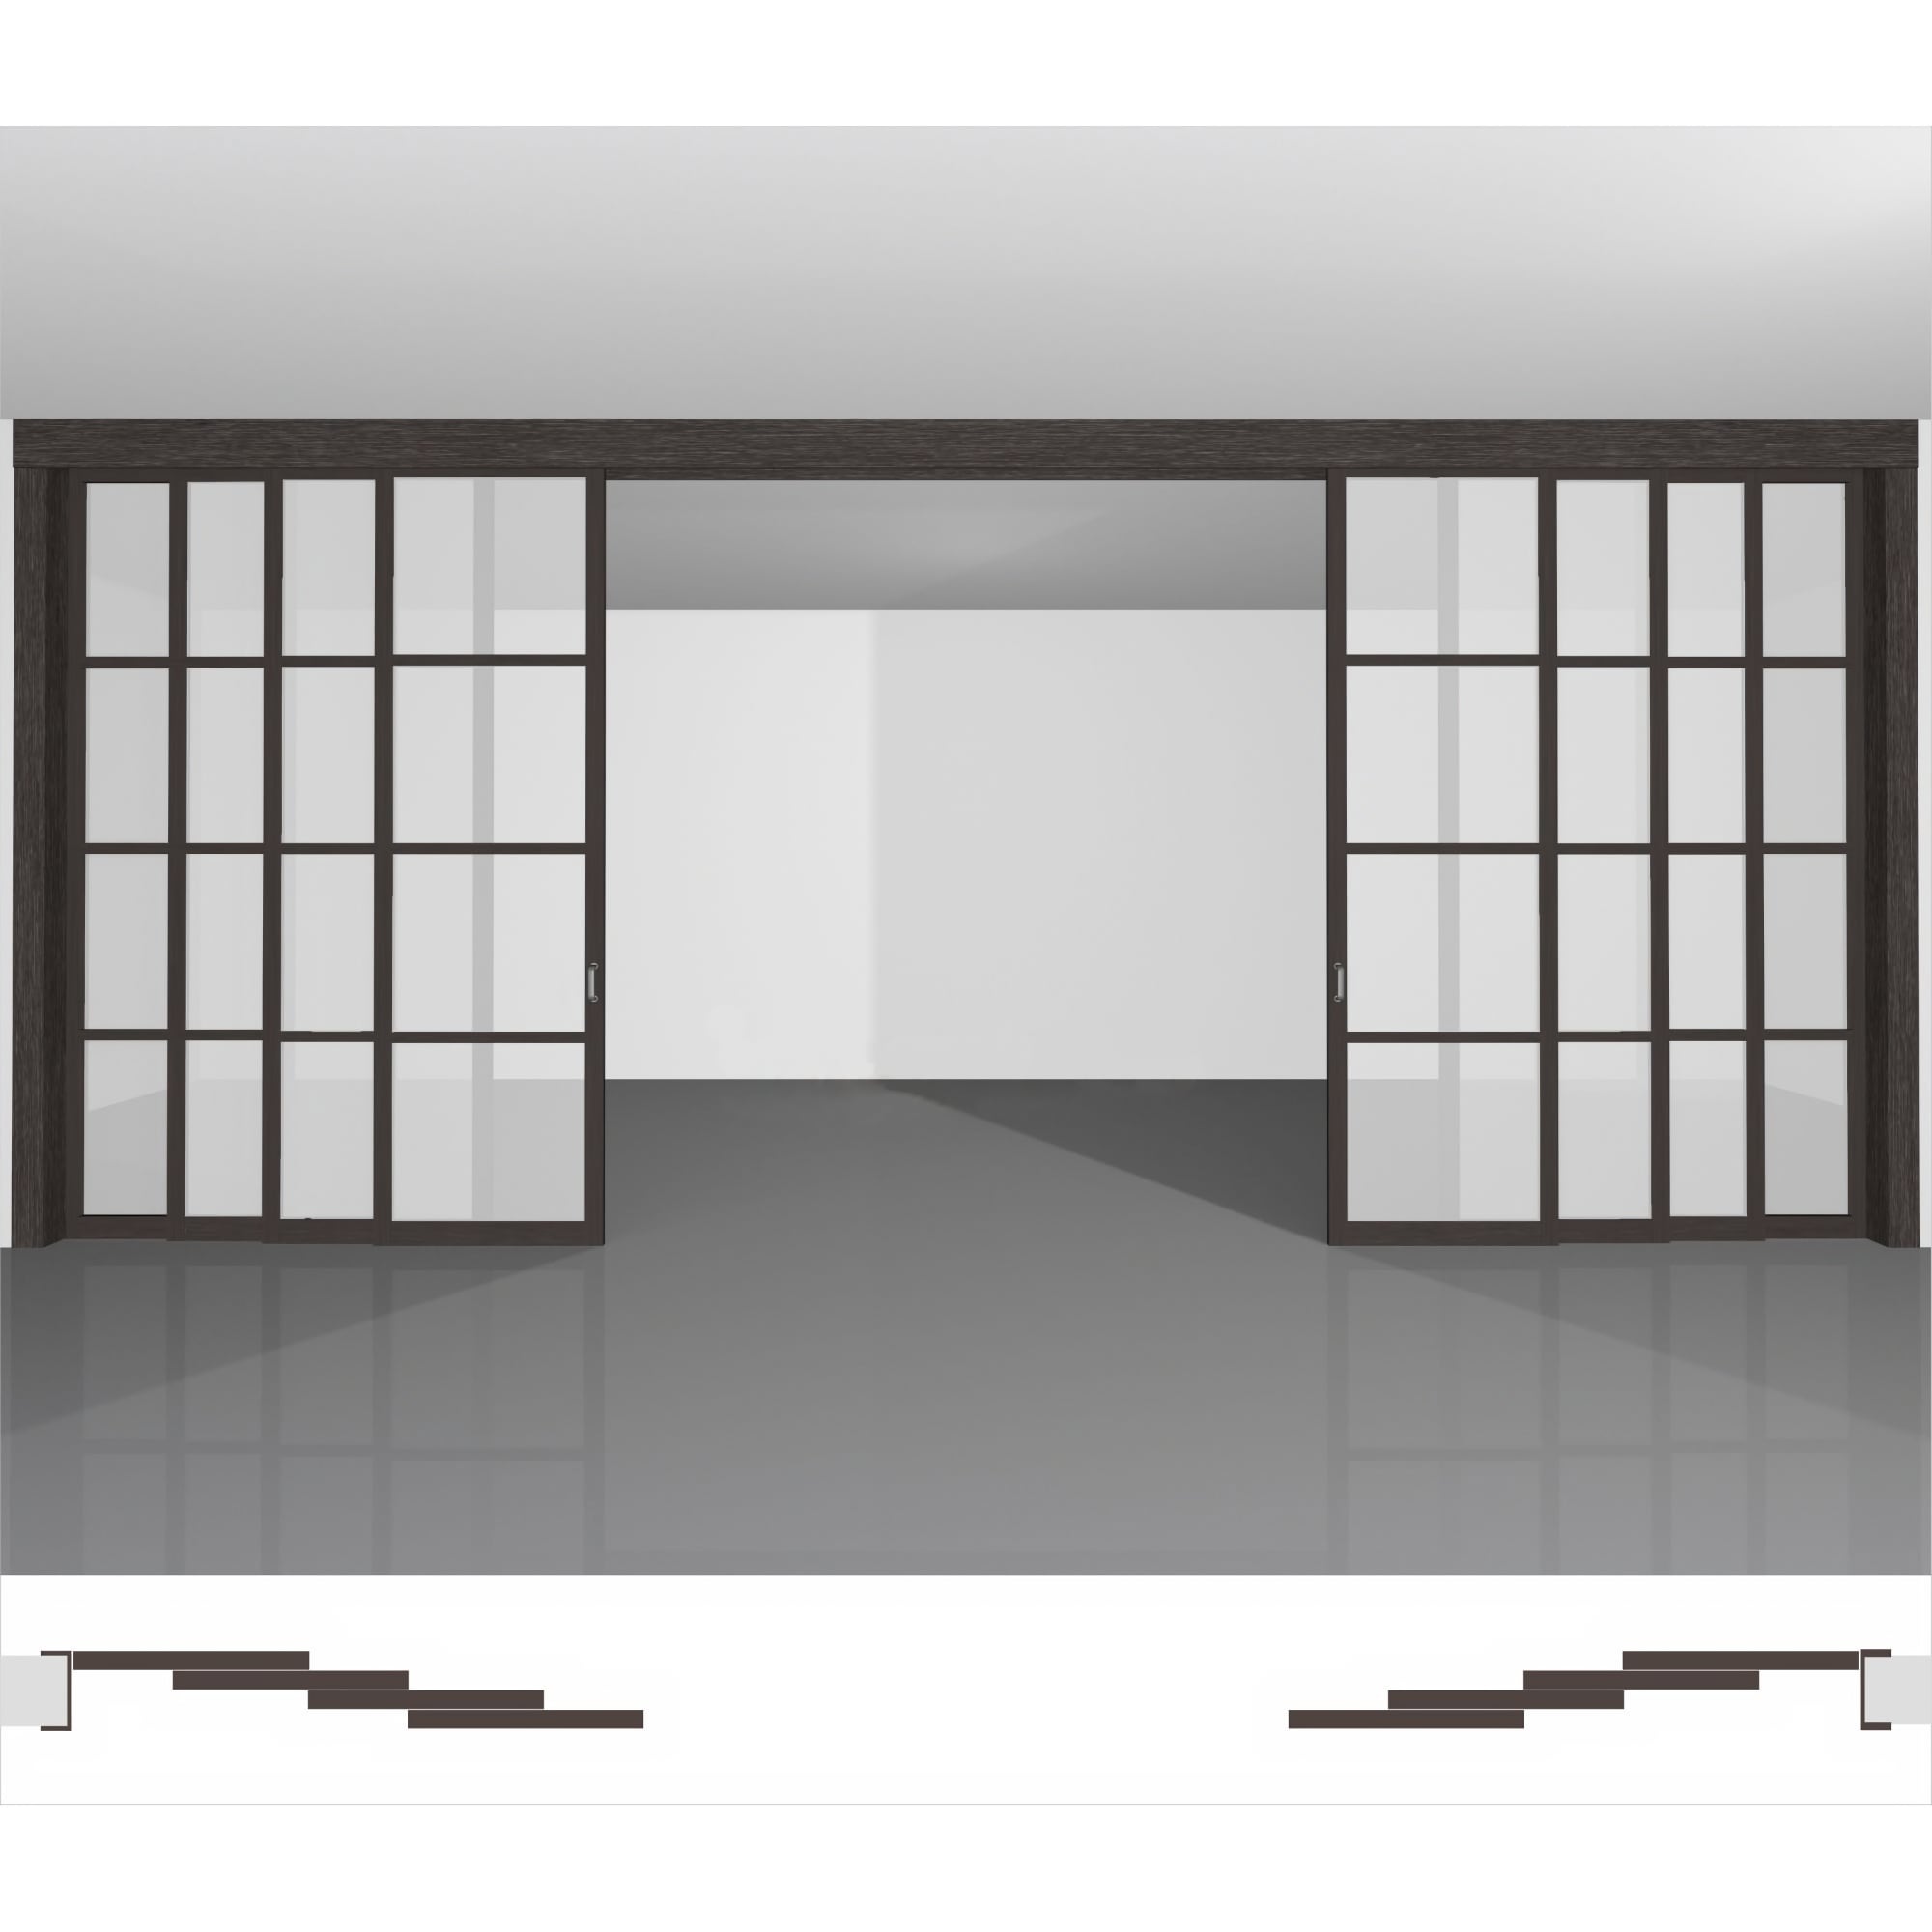 Межкомнатная перегородка для квартиры, изготовленная из качественных материалов, доступная к покупке в интернет-магазине - P04.3dv комплект из 8 створок под потолок • высота до 2430 мм